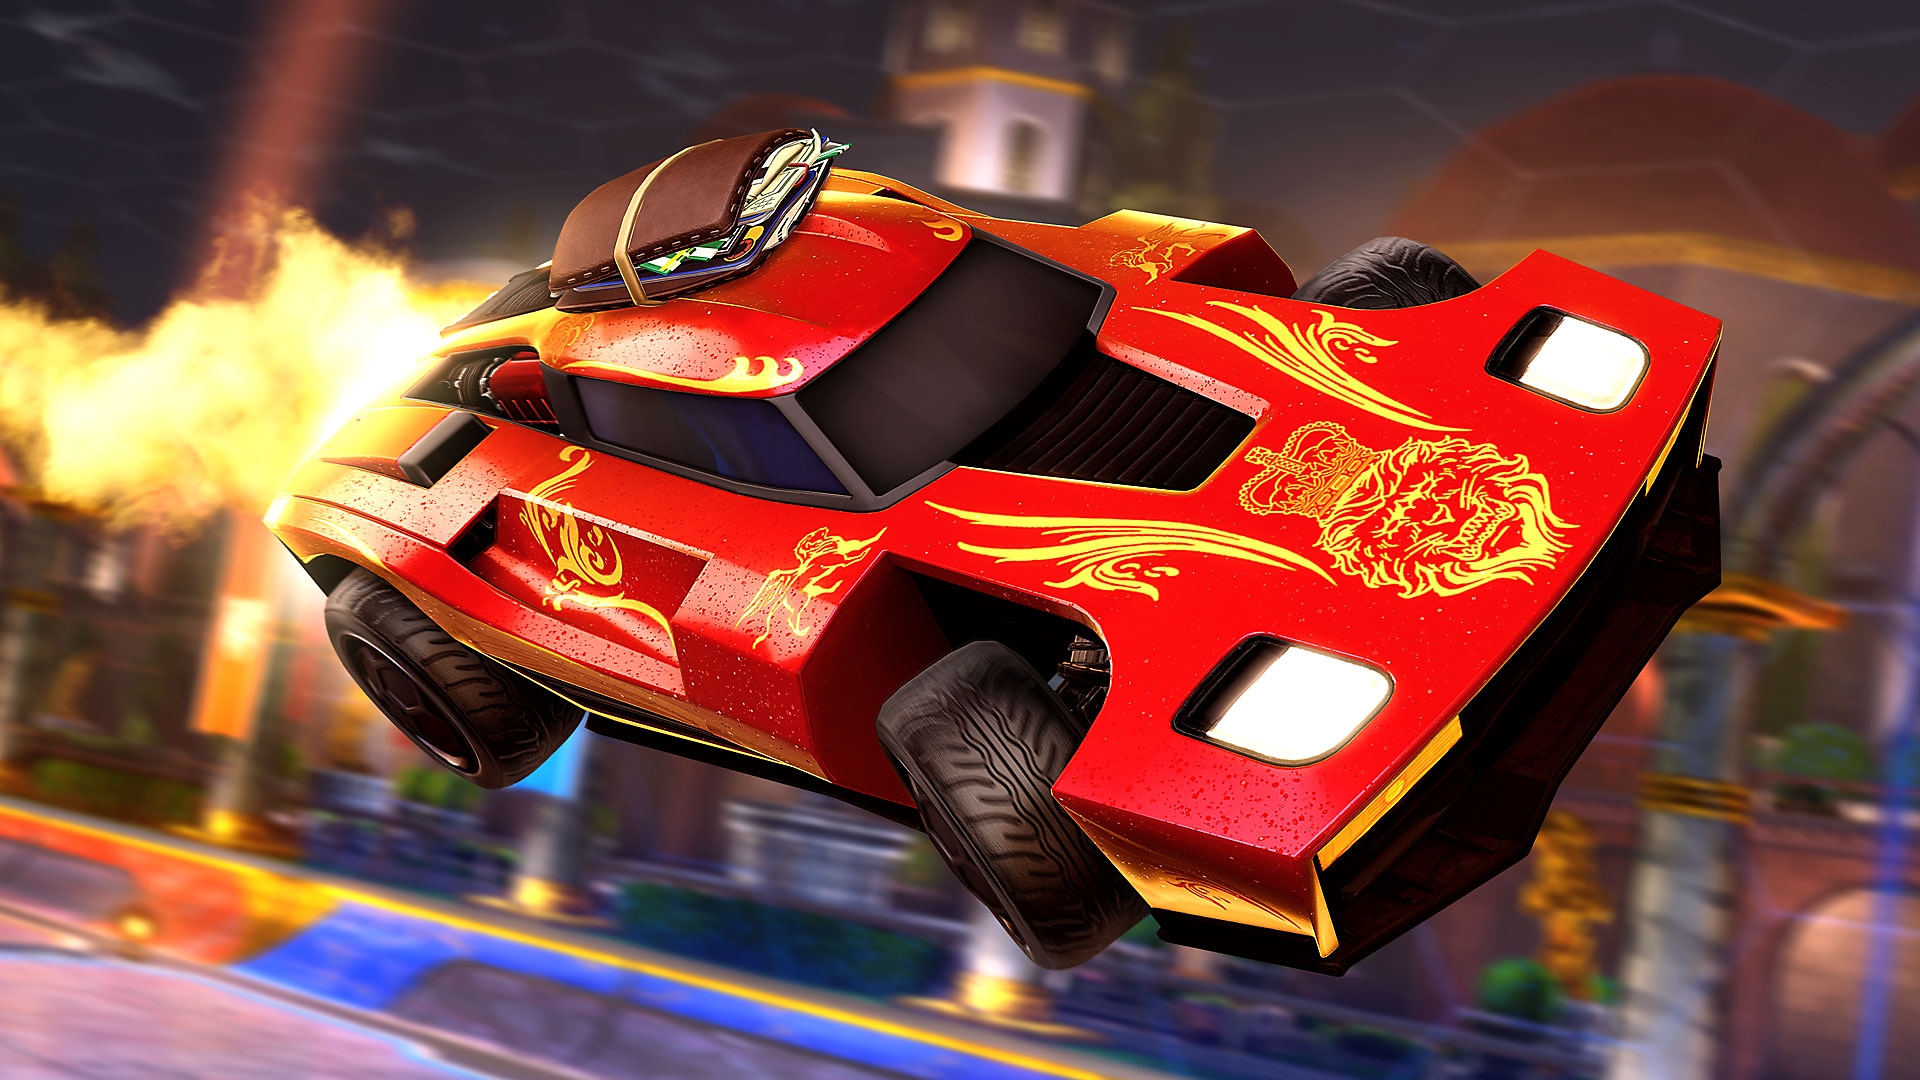 Screenshot von Rocket League, der einen roten Sportwagen zeigt, aus dessen Heck Flammen schlagen